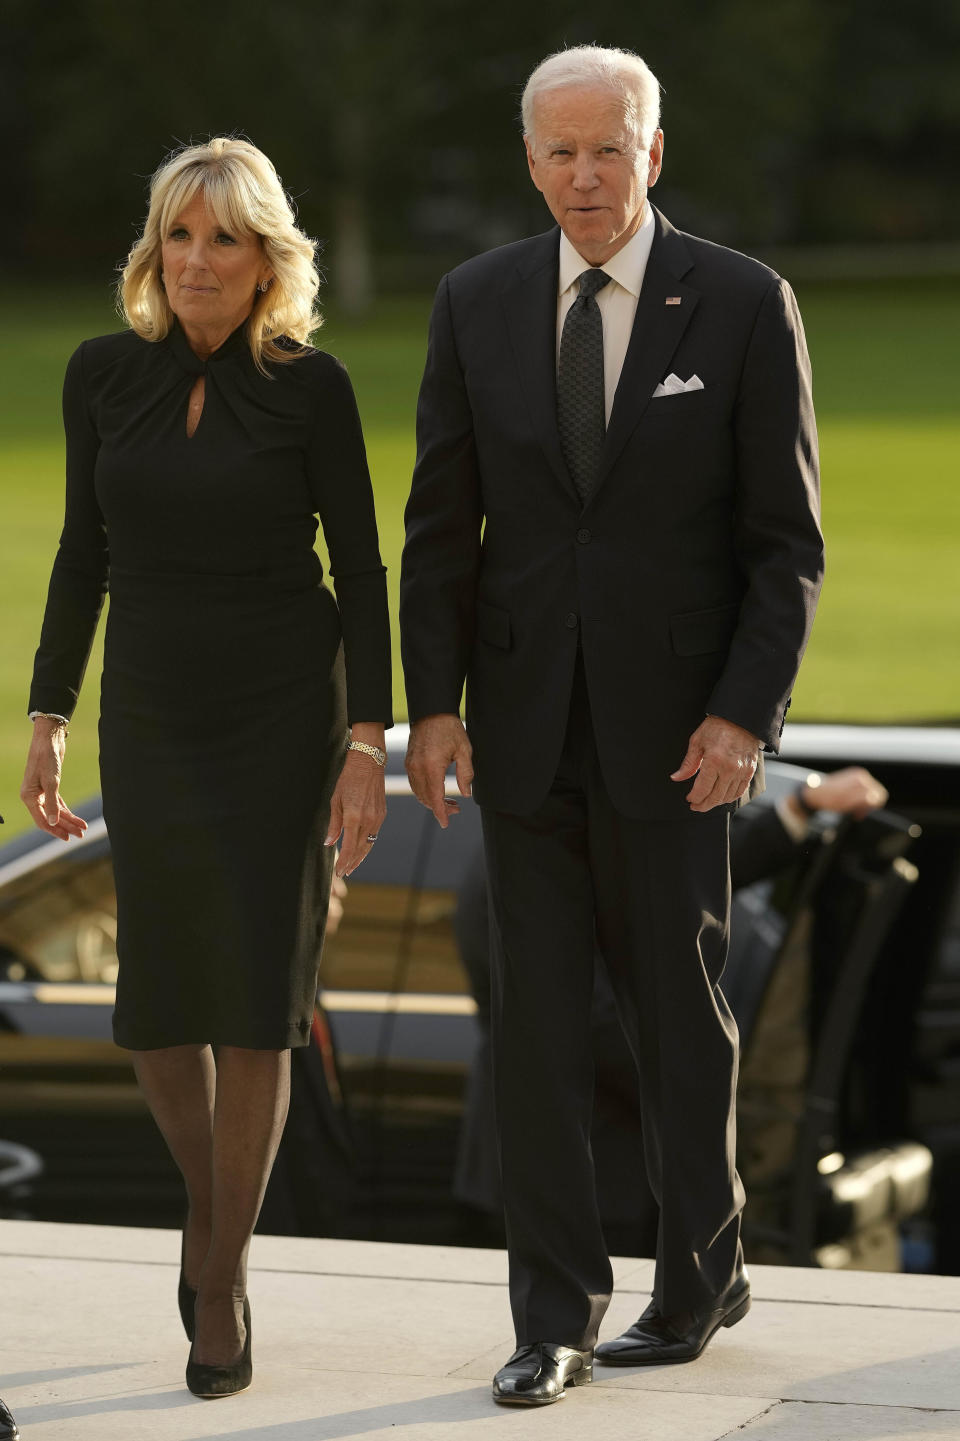 El presidente de Estados Unidos Joe Biden acompañado por la primera dama Jill Biden llega al Palacio de Buckingham en Londres el 18 de septiembre de 2022. El rey Carlos III ofreció una recepción para jefes de Estado en el Palacio de Buckingham el domingo por la noche previo al funeral de Estado de la reina Isabel II el lunes. (Foto AP/Markus Schreiber, Pool)